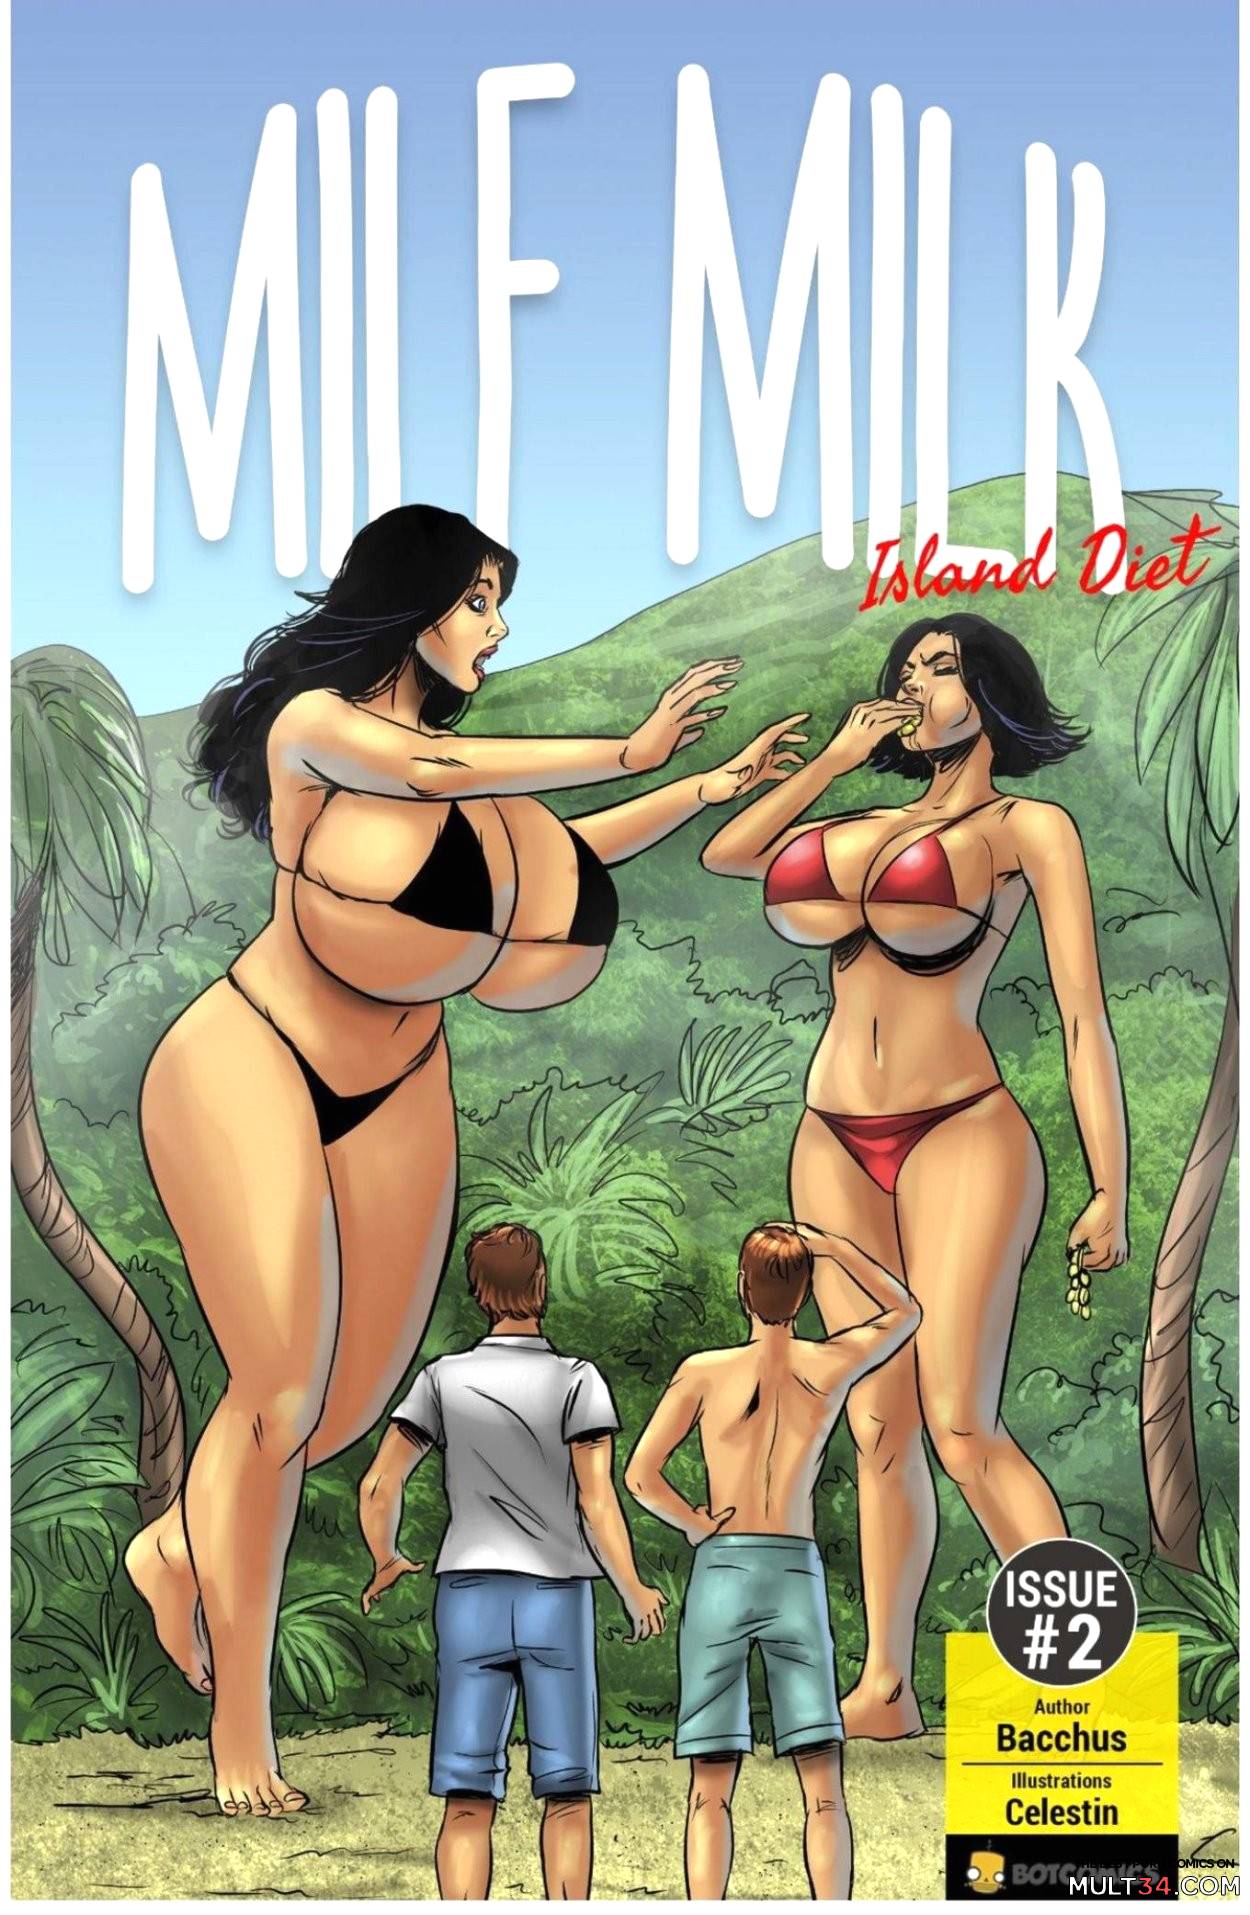 Milf Milk 2. Island Diet page 1